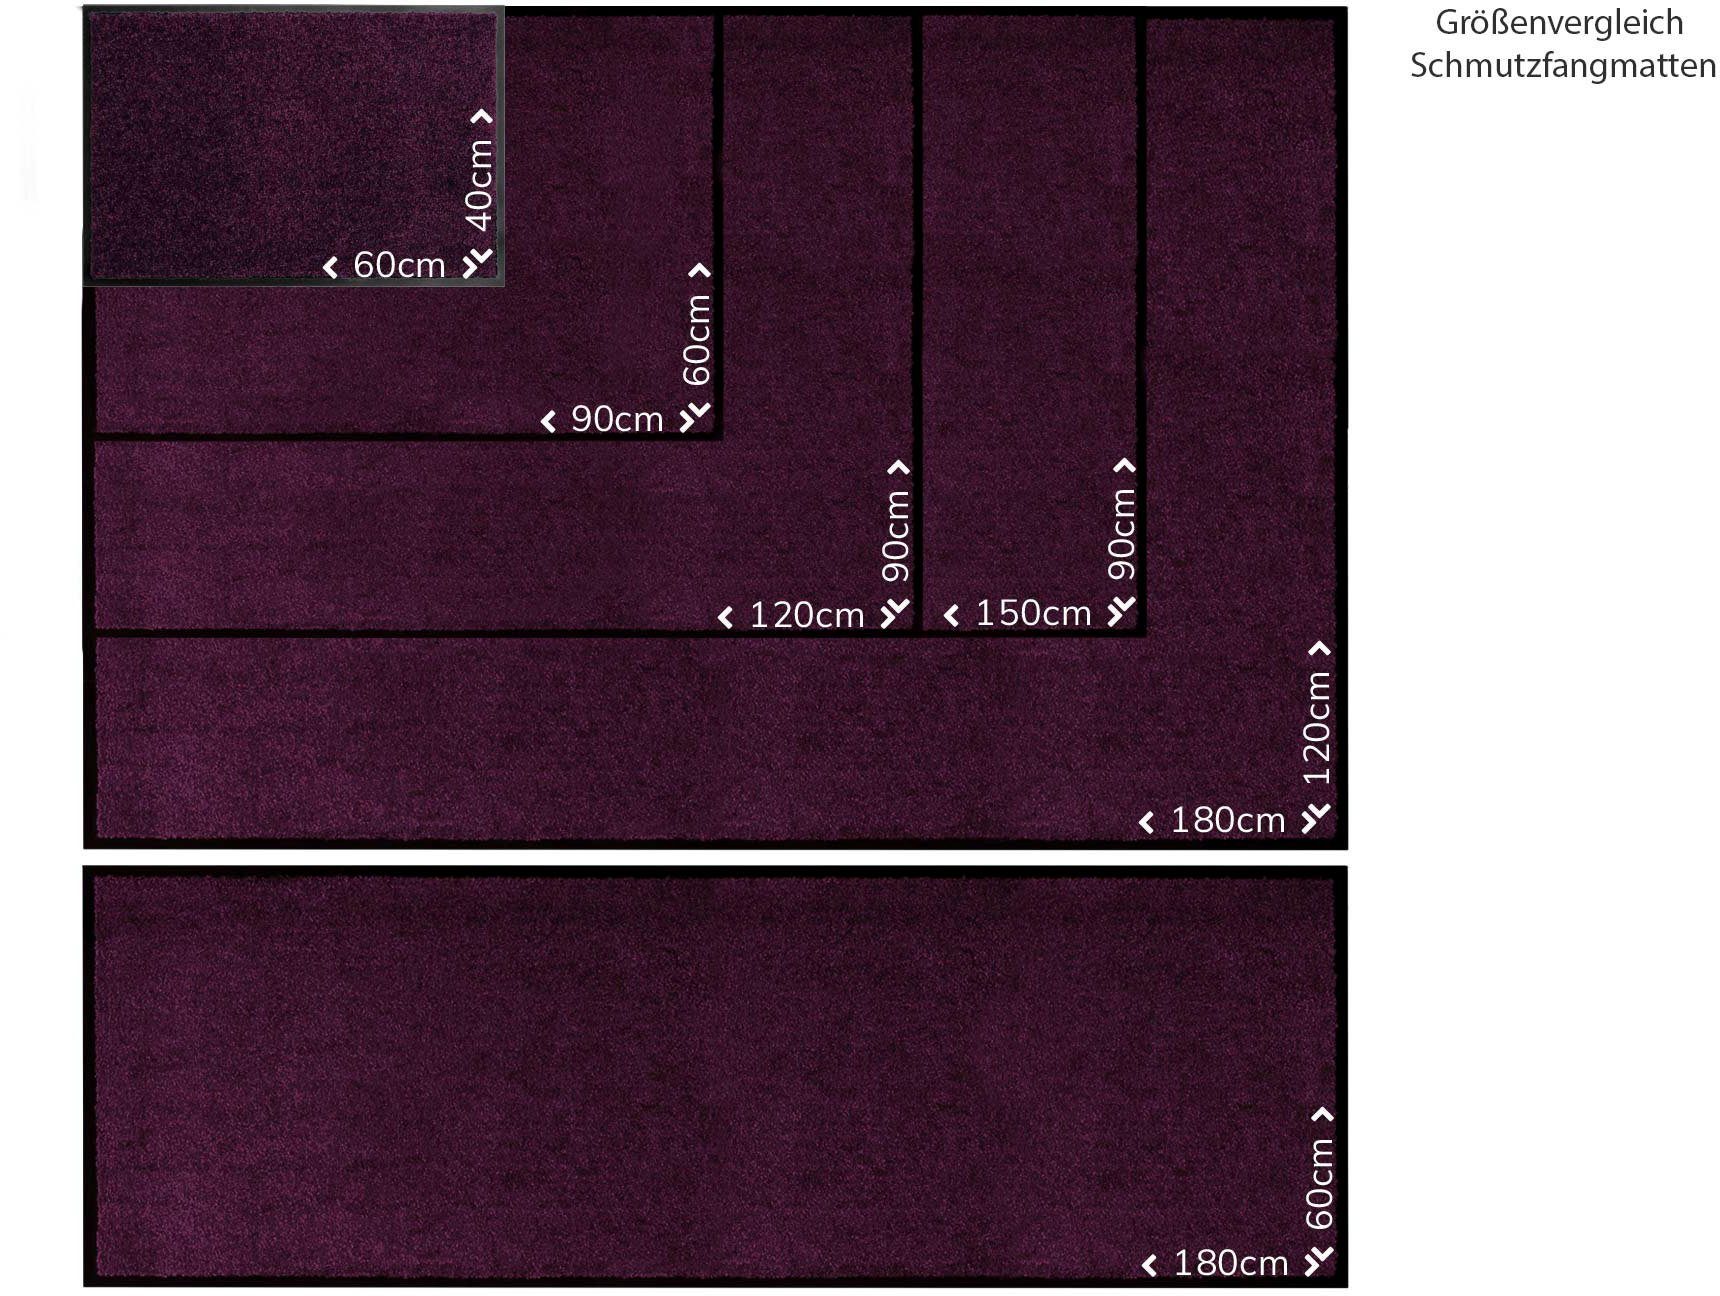 Textil, Höhe: Primaflor-Ideen Schmutzfangmatte Uni-Farben, mm, CLEAN lila Fußmatte in rechteckig, PRO, UV-beständig, waschbar 8 Schmutzfangmatte,